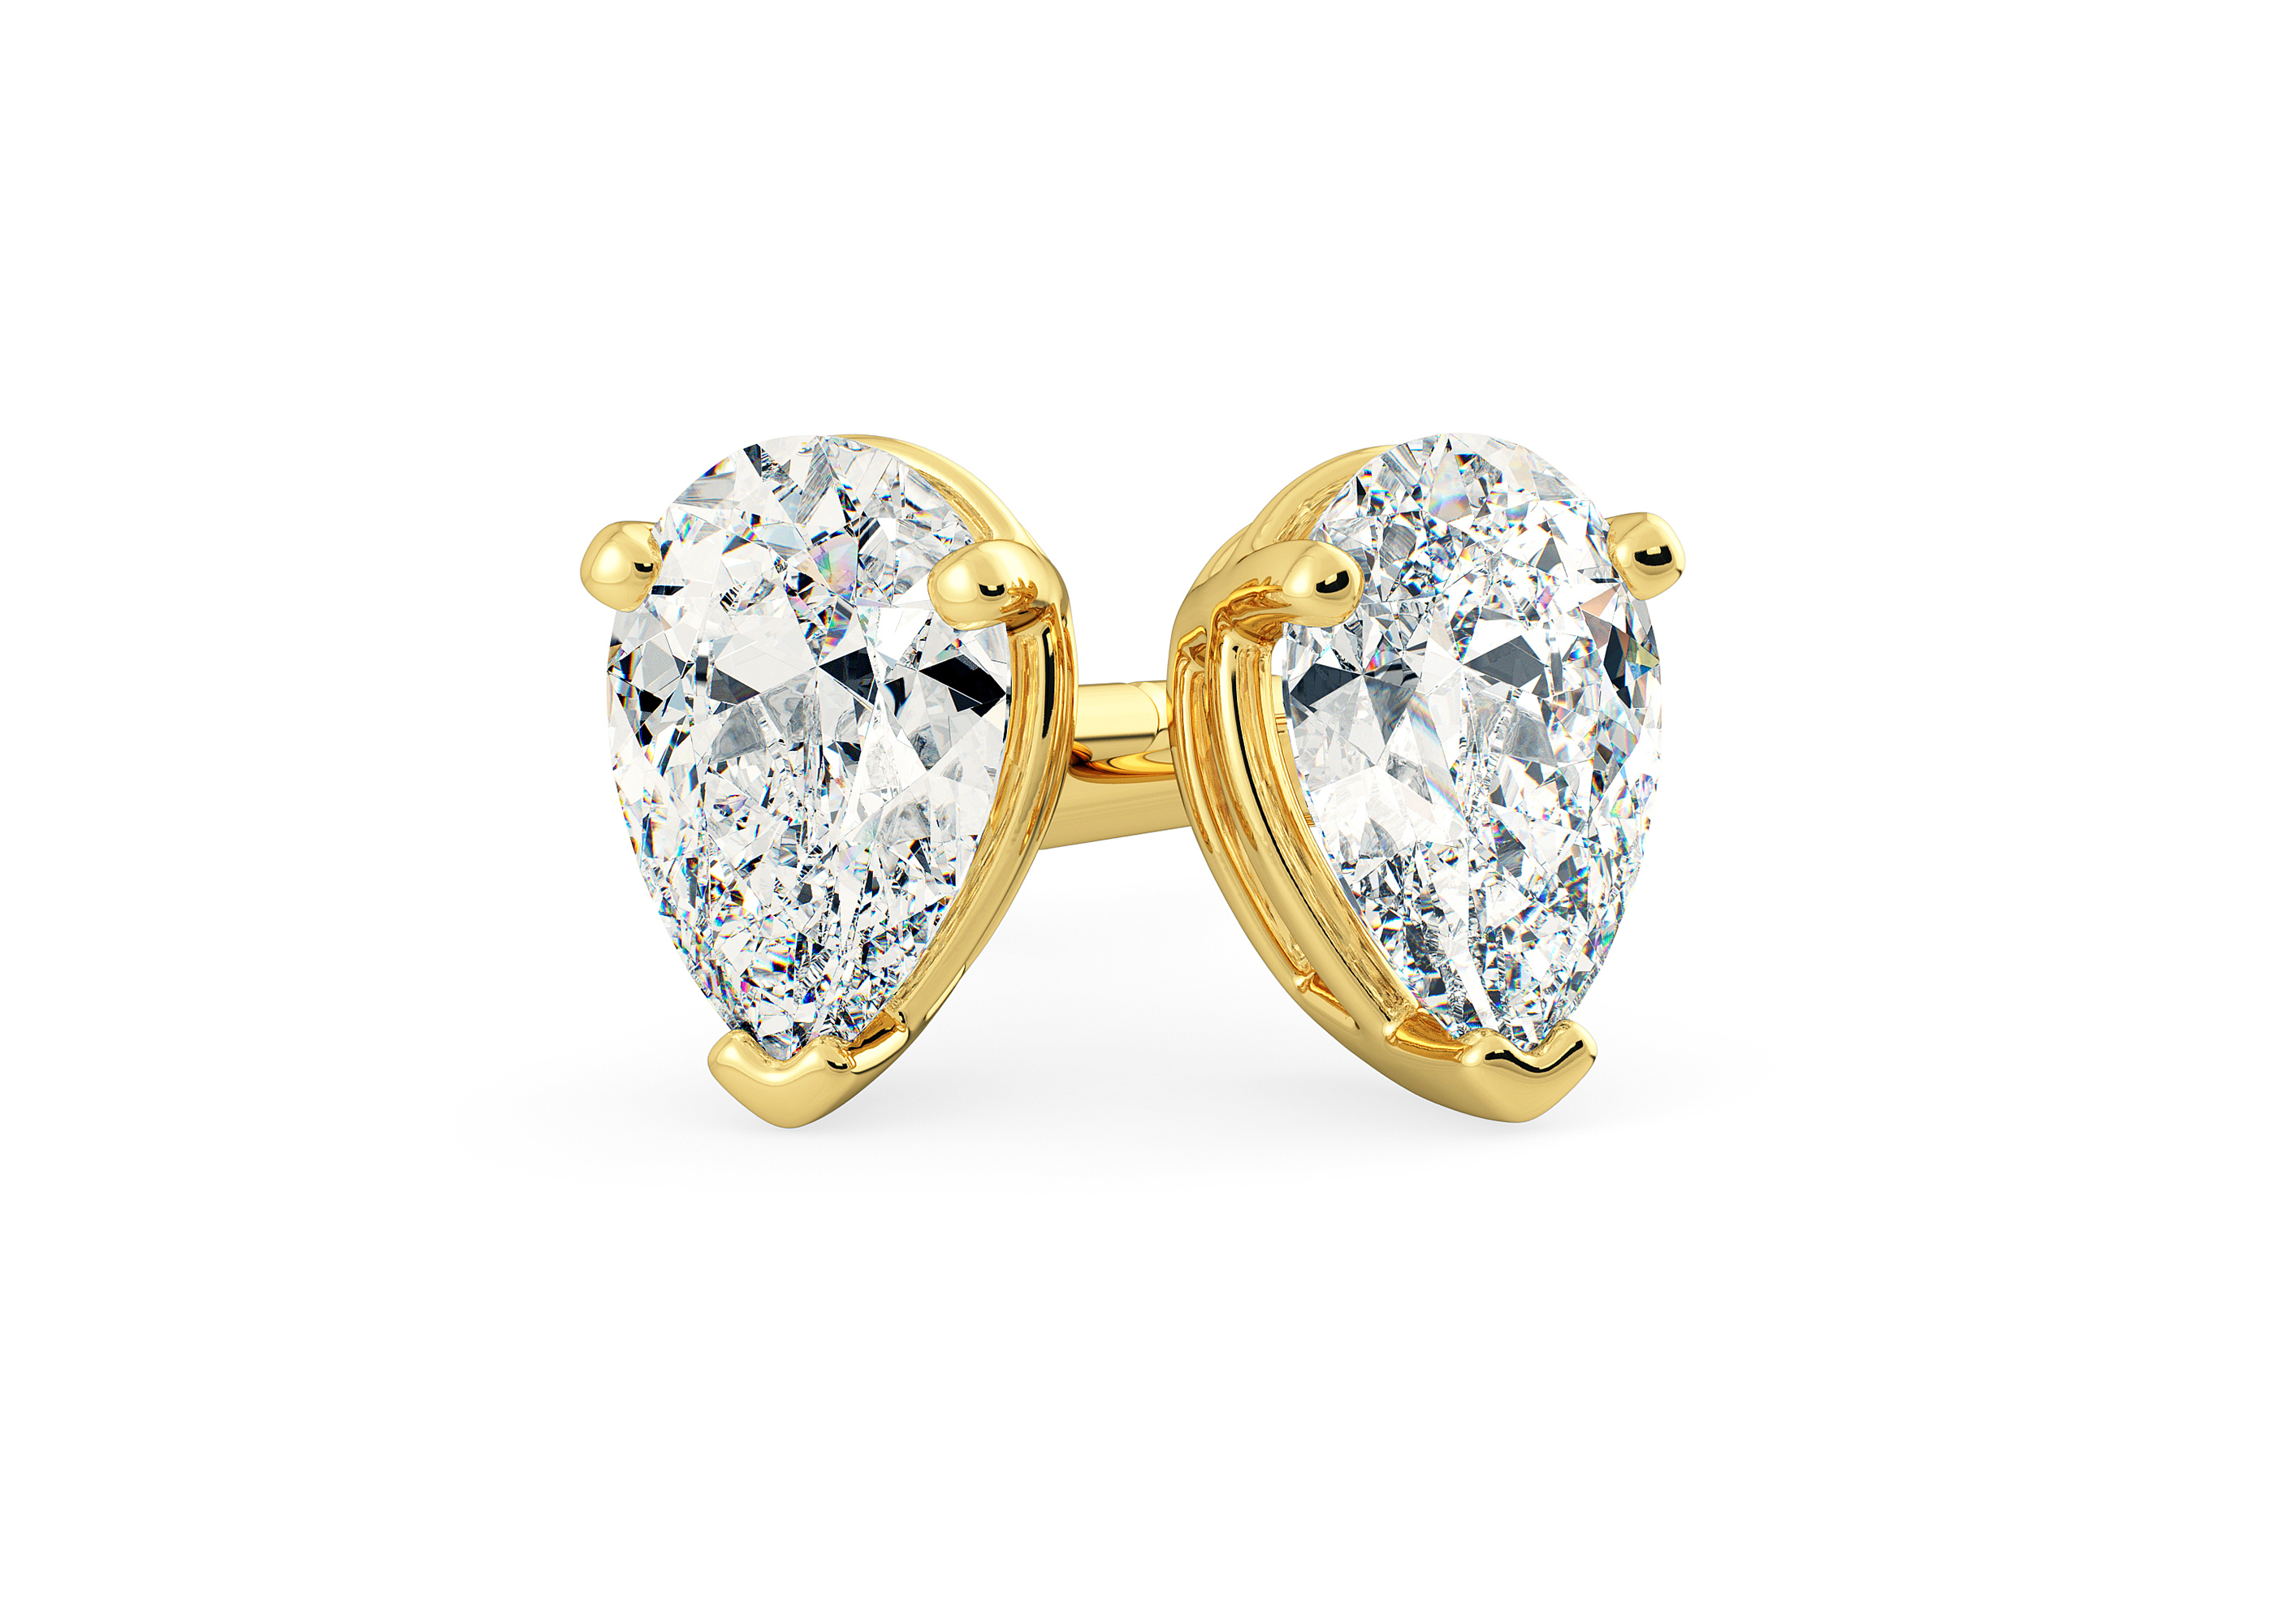 One Carat Pear Diamond Stud Earrings in 18K Yellow Gold